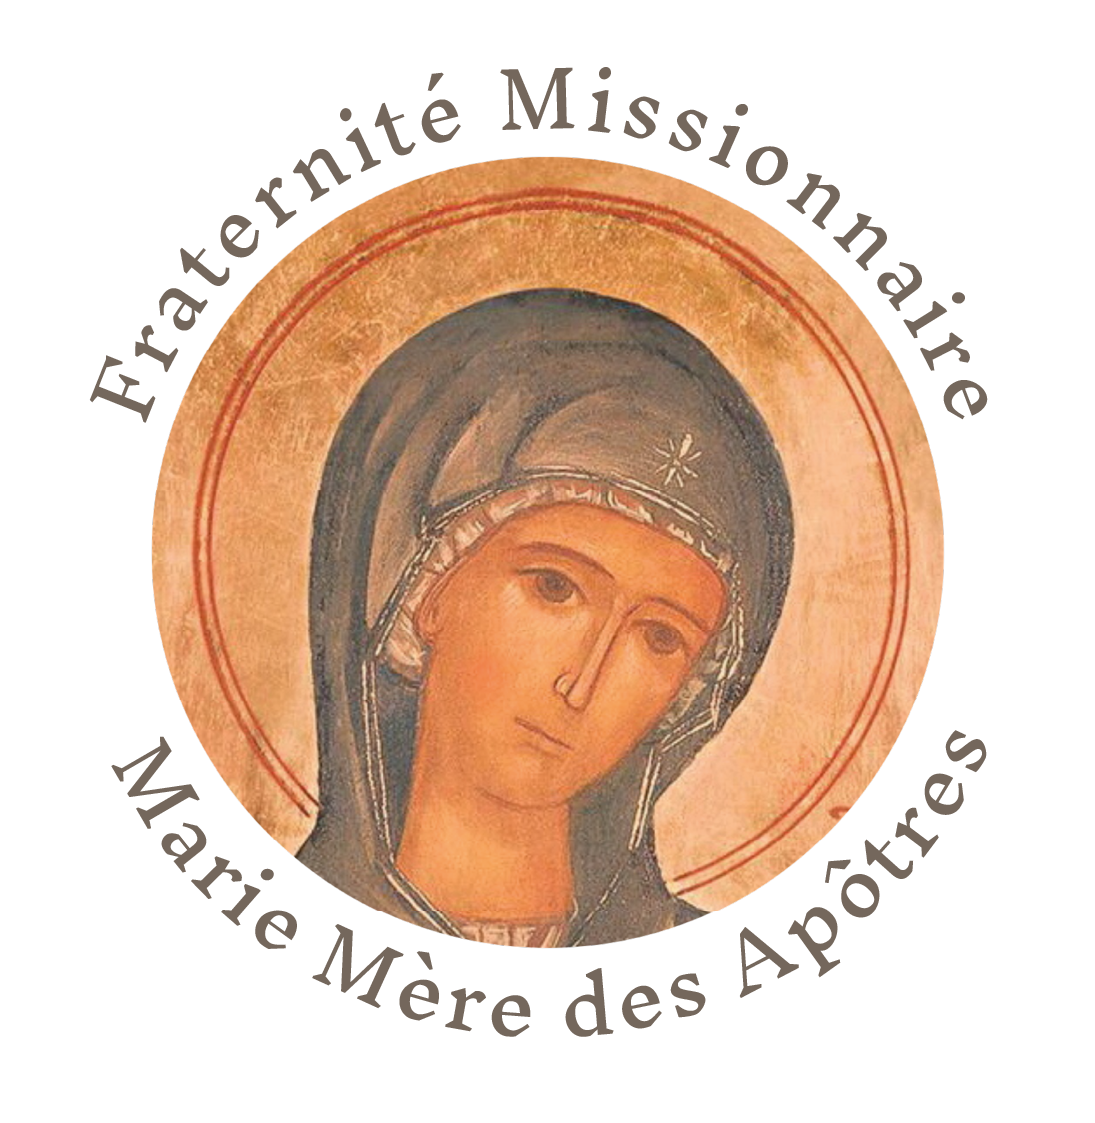 Fraternité Missionnaire Marie Mère des Apôtres